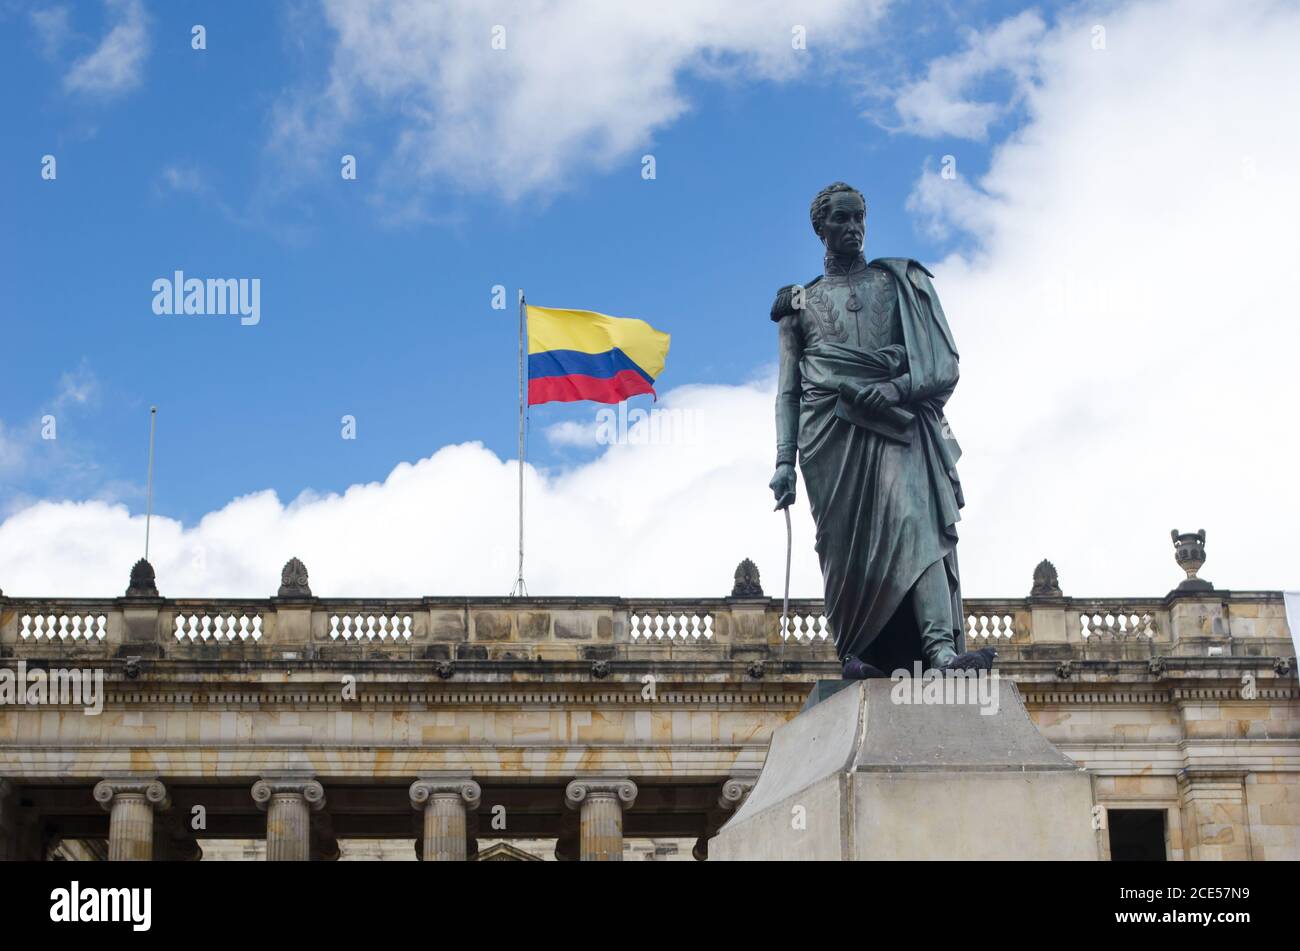 Fassade des Capitolio Nacional am Bolivar-Platz in Bogota. Die kolumbianische Flagge und die Bolivar Statue sind ebenfalls zu sehen Stockfoto